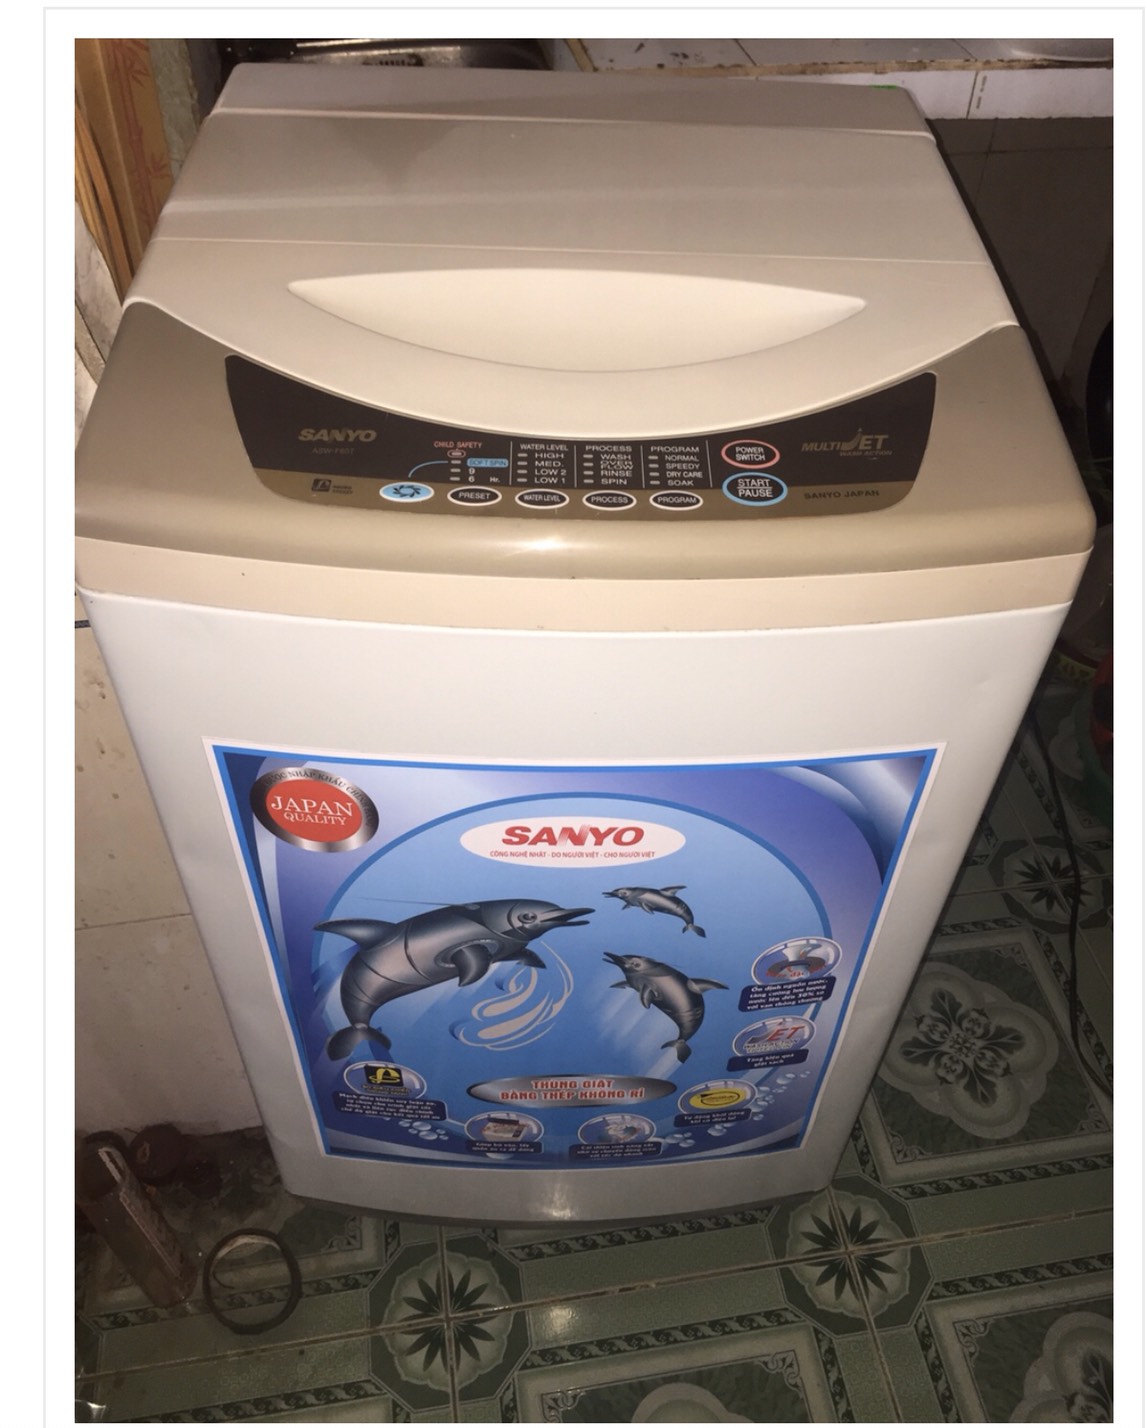 Máy Giặt SANYO 7kg Nguyên zing 100% ngoại hình máy trắng đẹp 91%